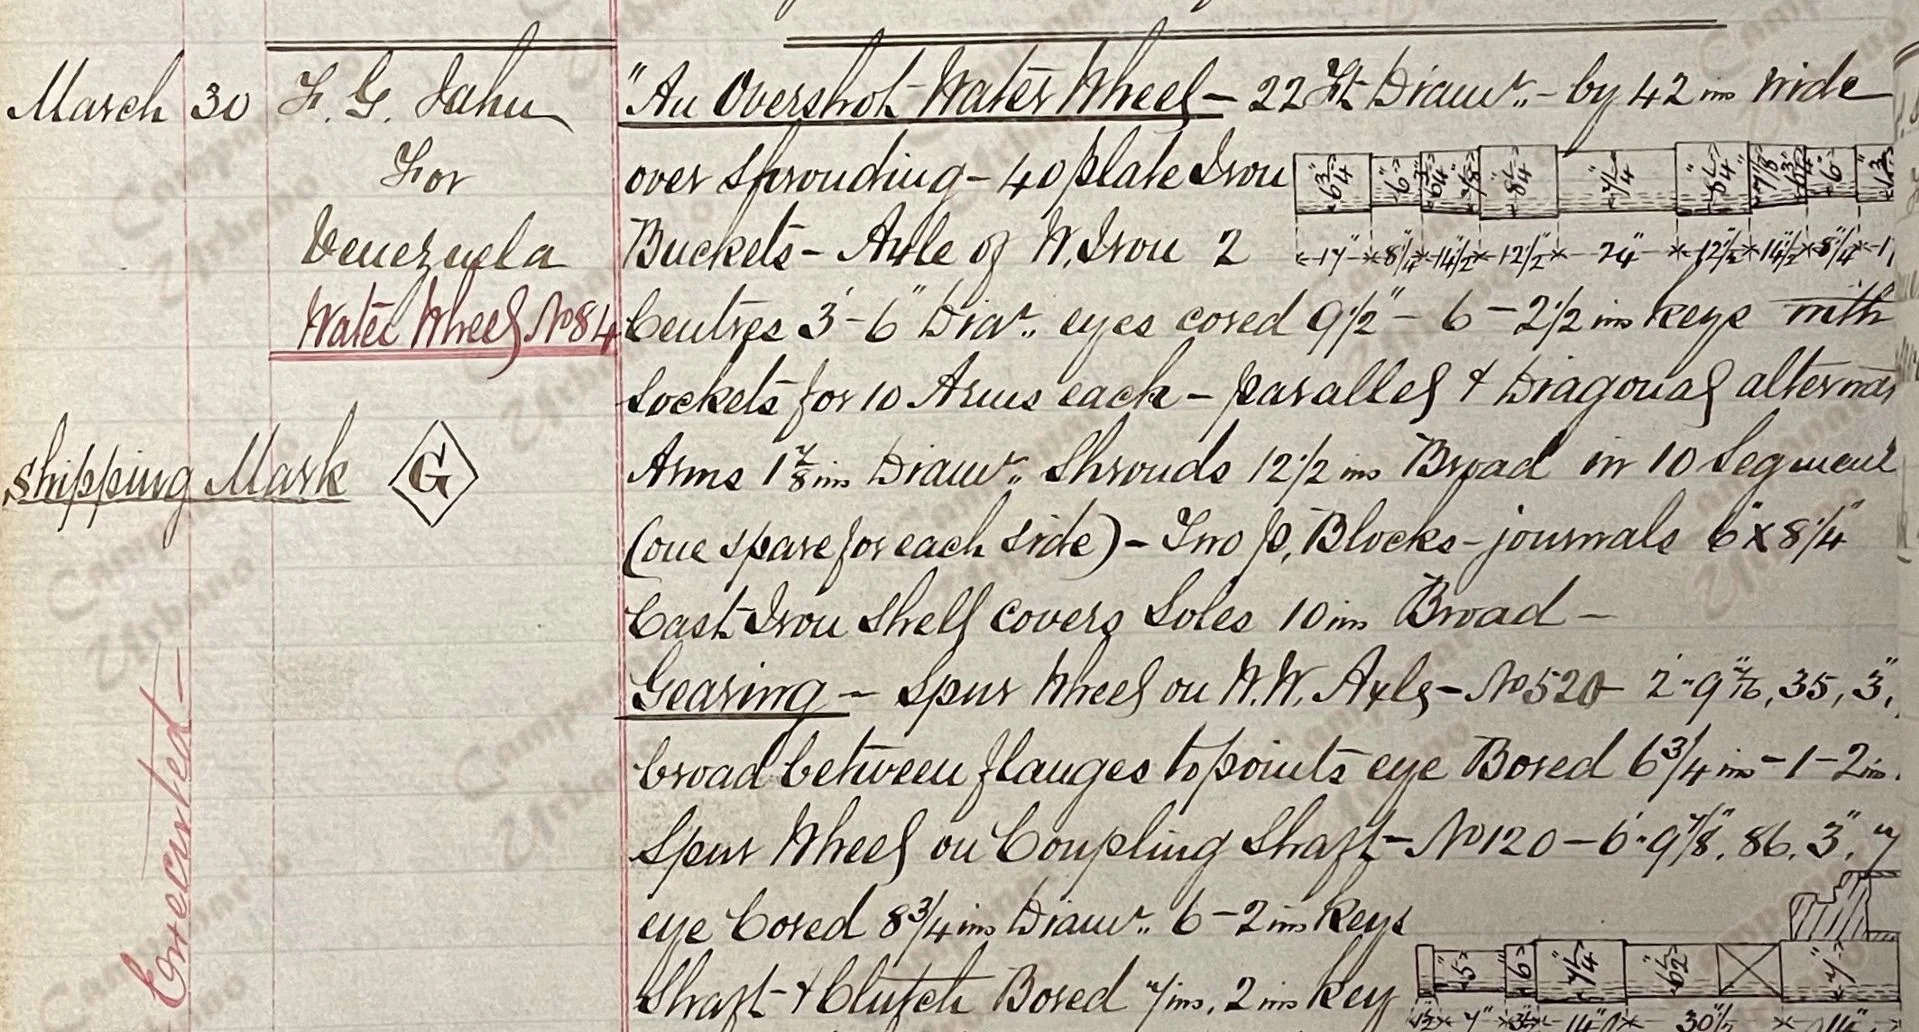 Libro de Órdenes de W. & A. McOnie, Glasgow, Escocia, 1869. En este libro se observa la orden de compra del ingenio de trapiche de la antigua Hacienda La Concepción de Guarenas.